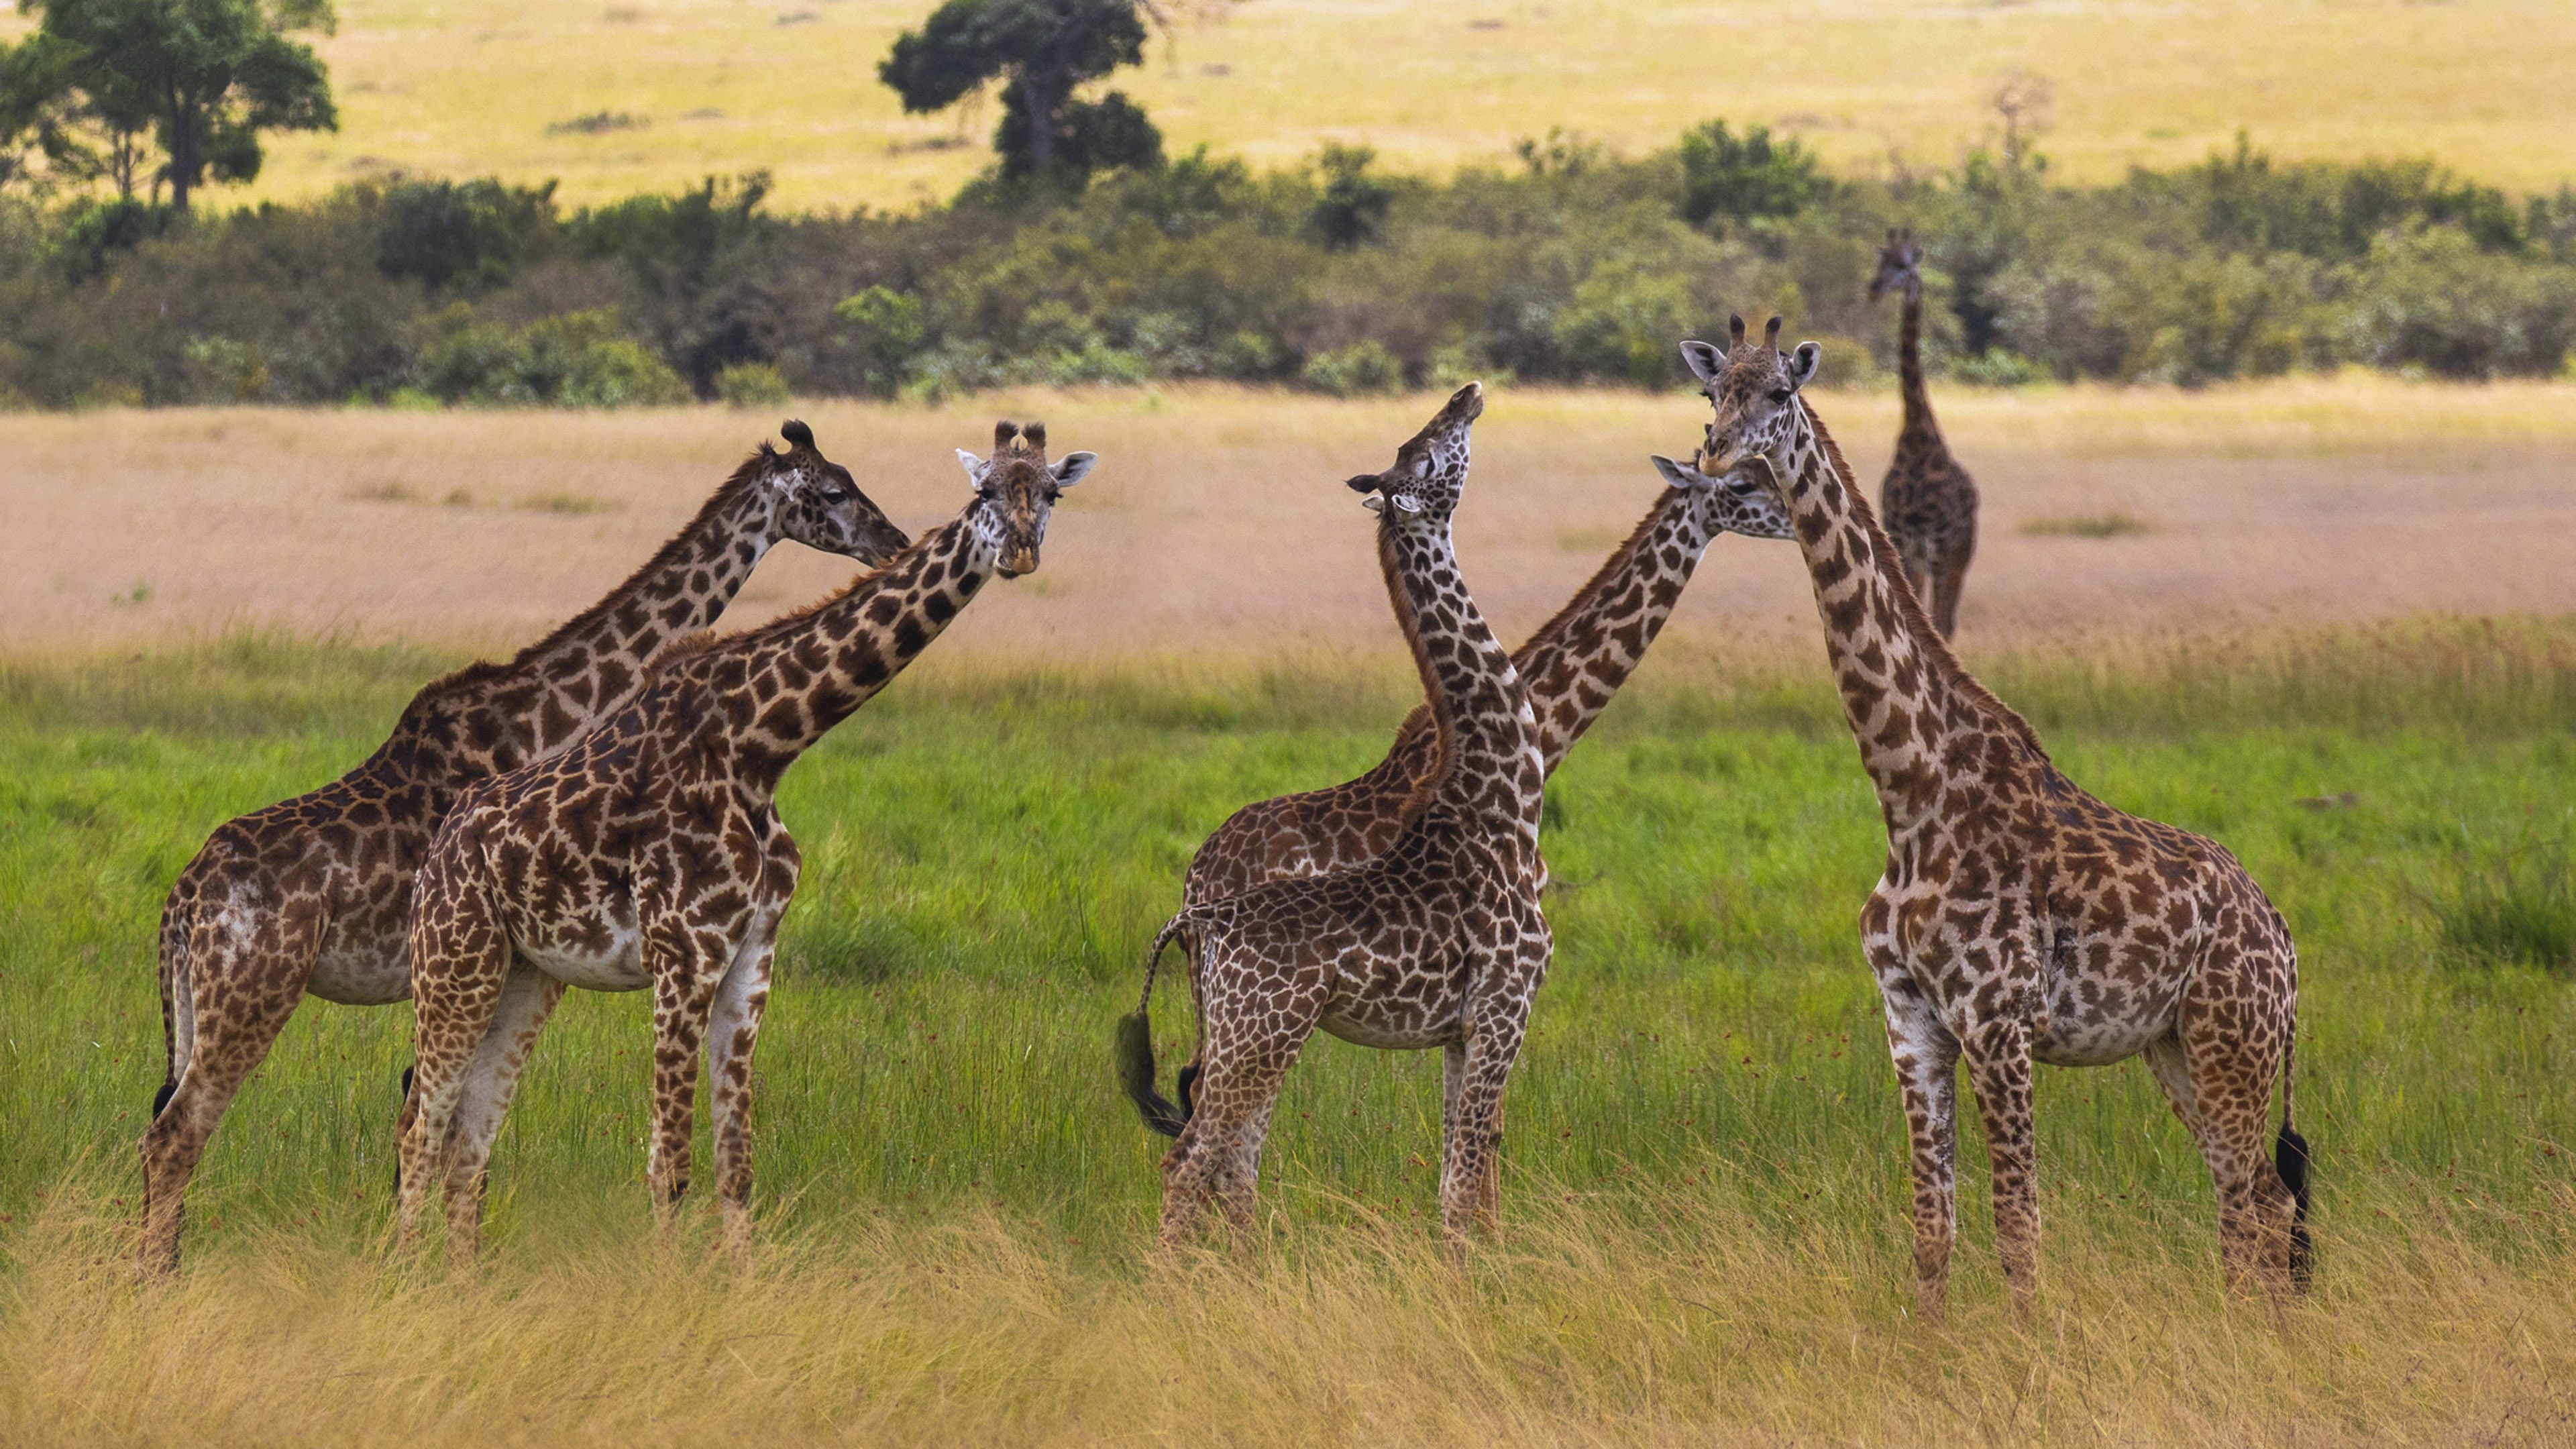 Giraffe African, Mammals ultra HD, Mobile phones, Laptop, 3840x2160 4K Desktop